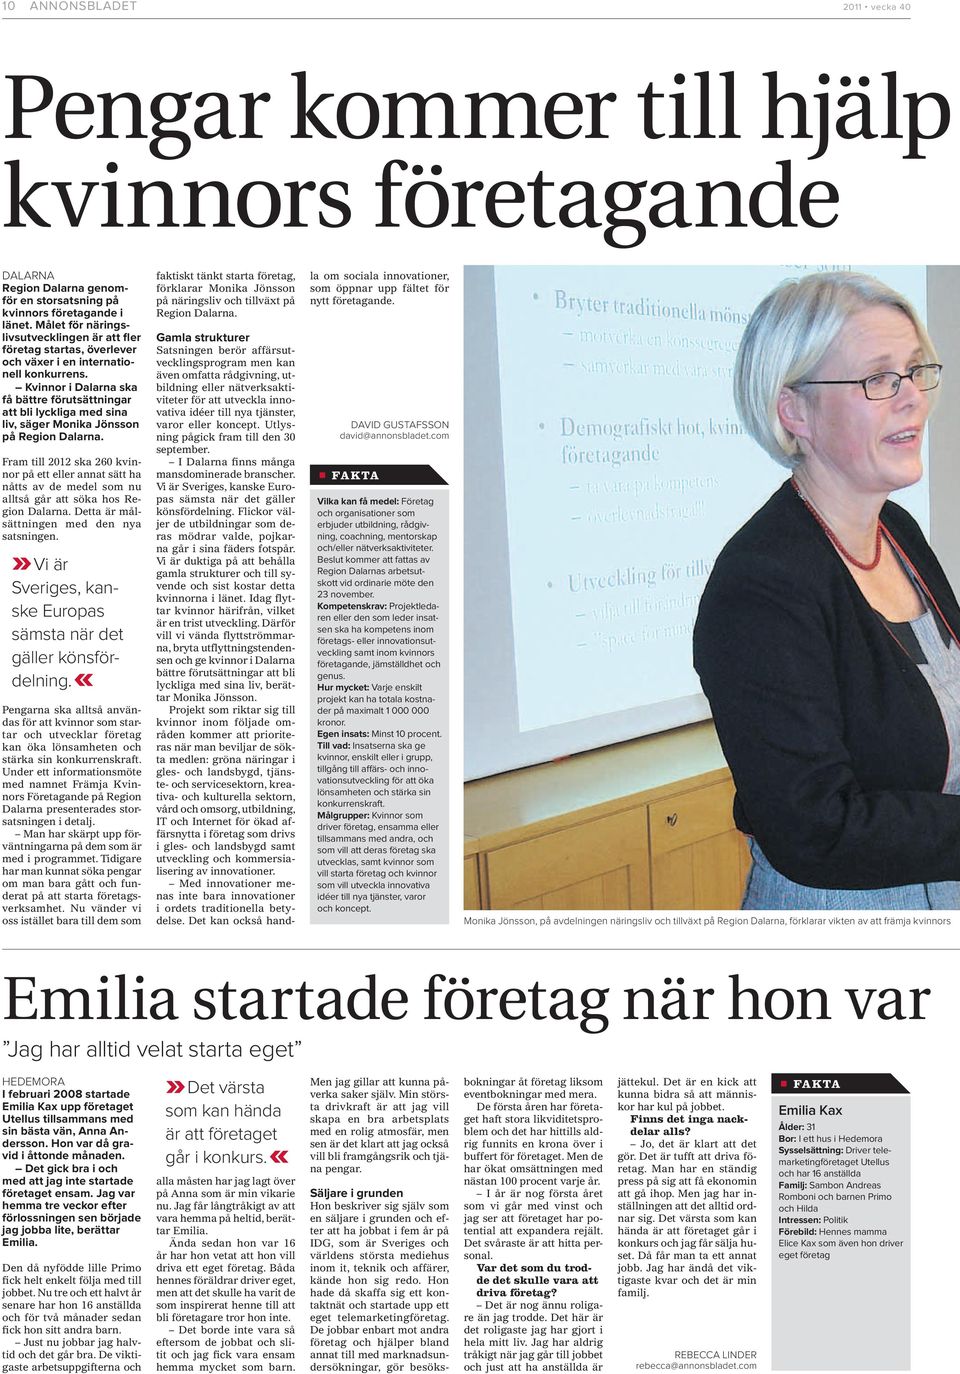 Kvinnor i Dalarna ska få bättre förutsättningar att bli lyckliga med sina liv, säger Monika Jönsson på Region Dalarna.